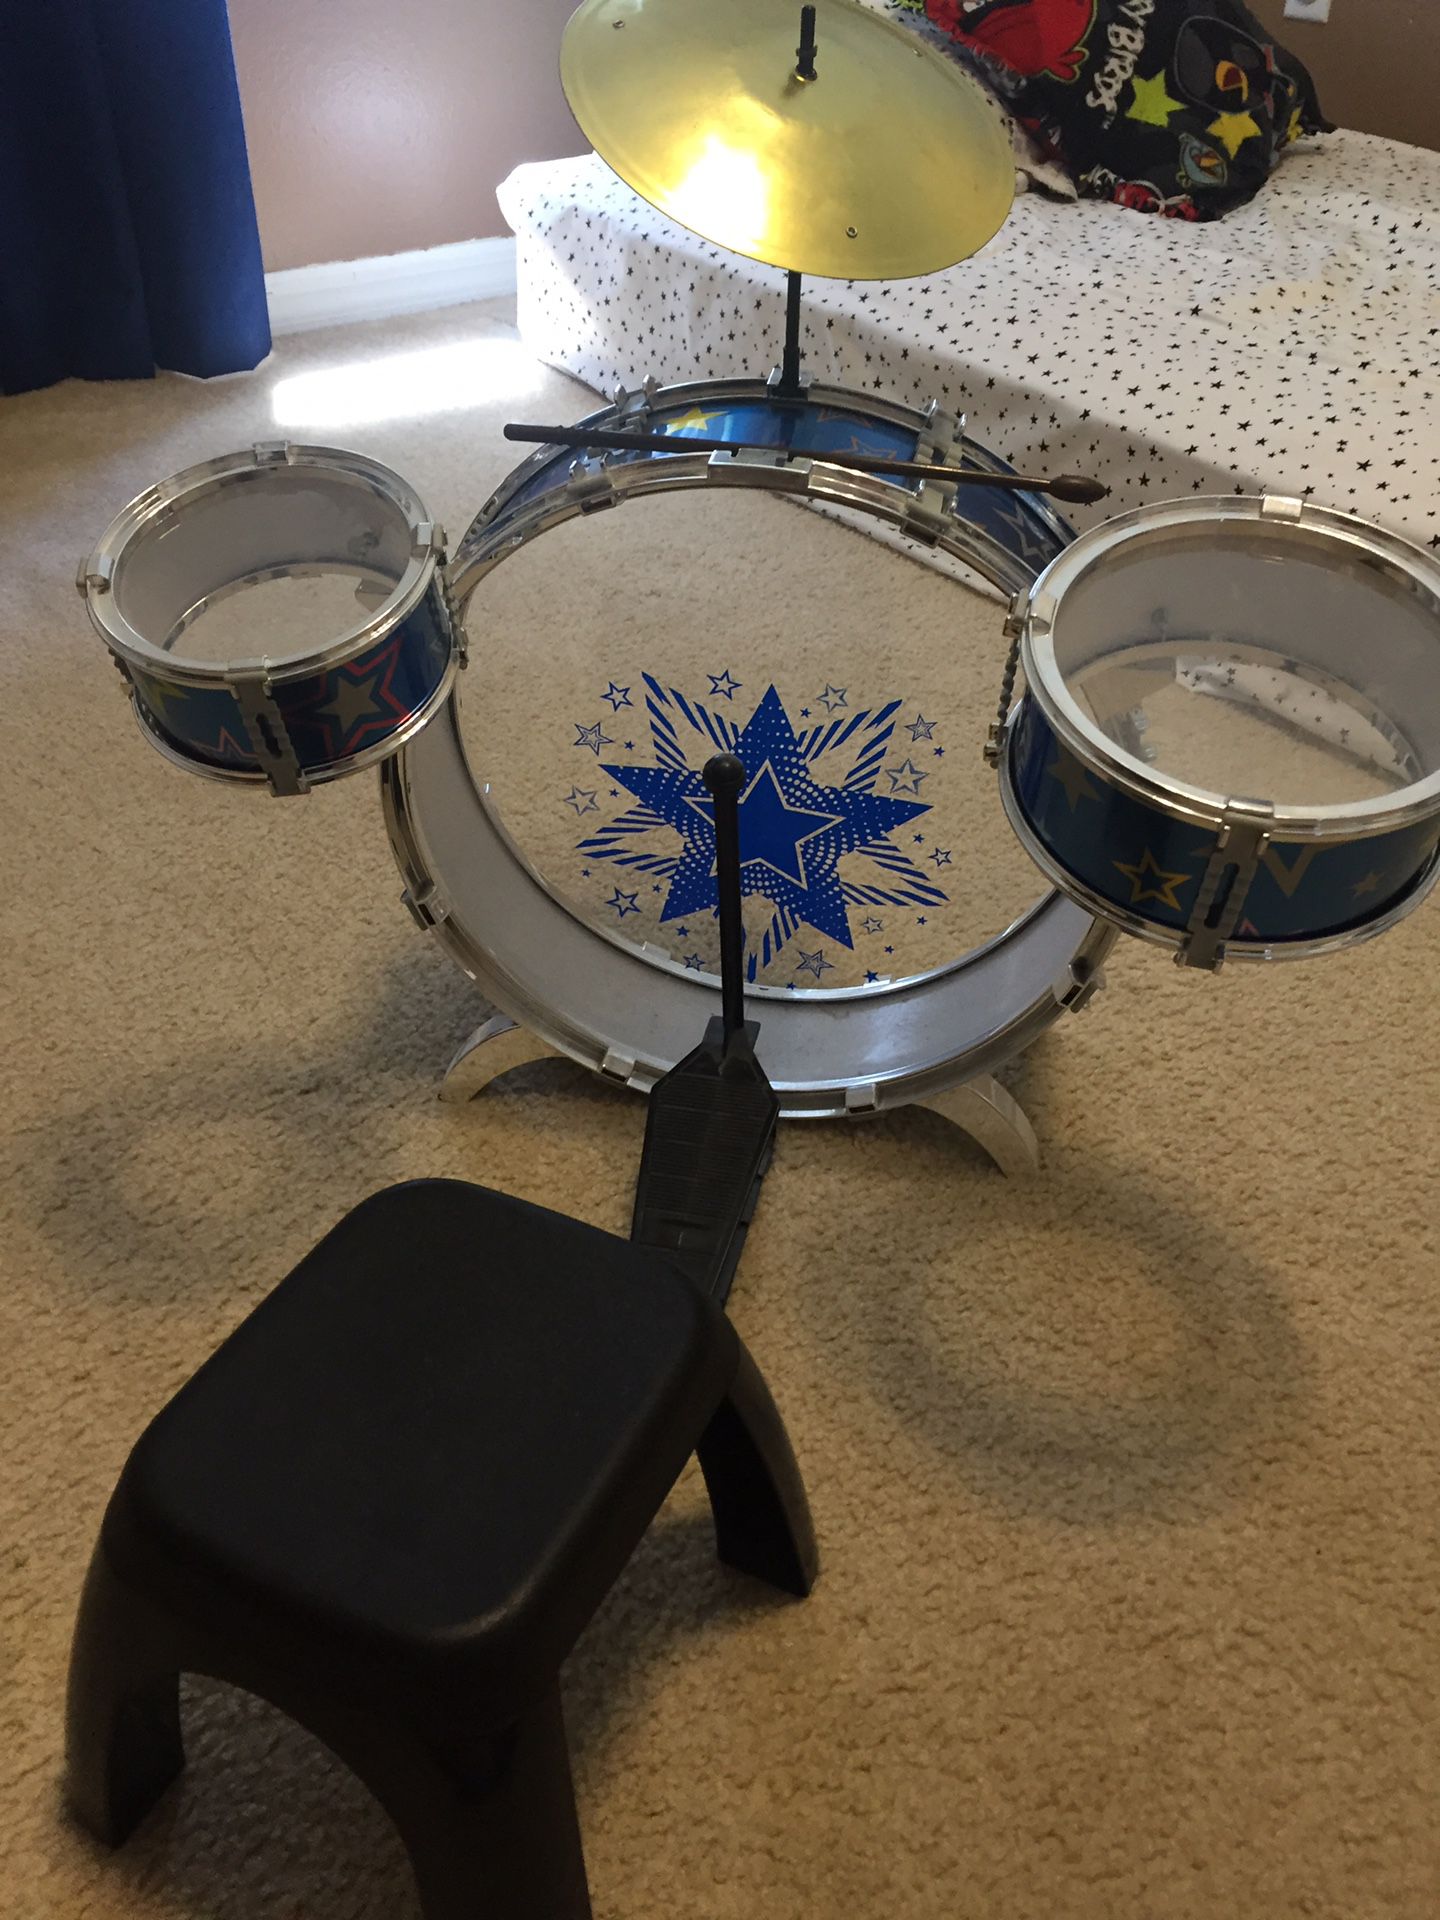 My first drum set